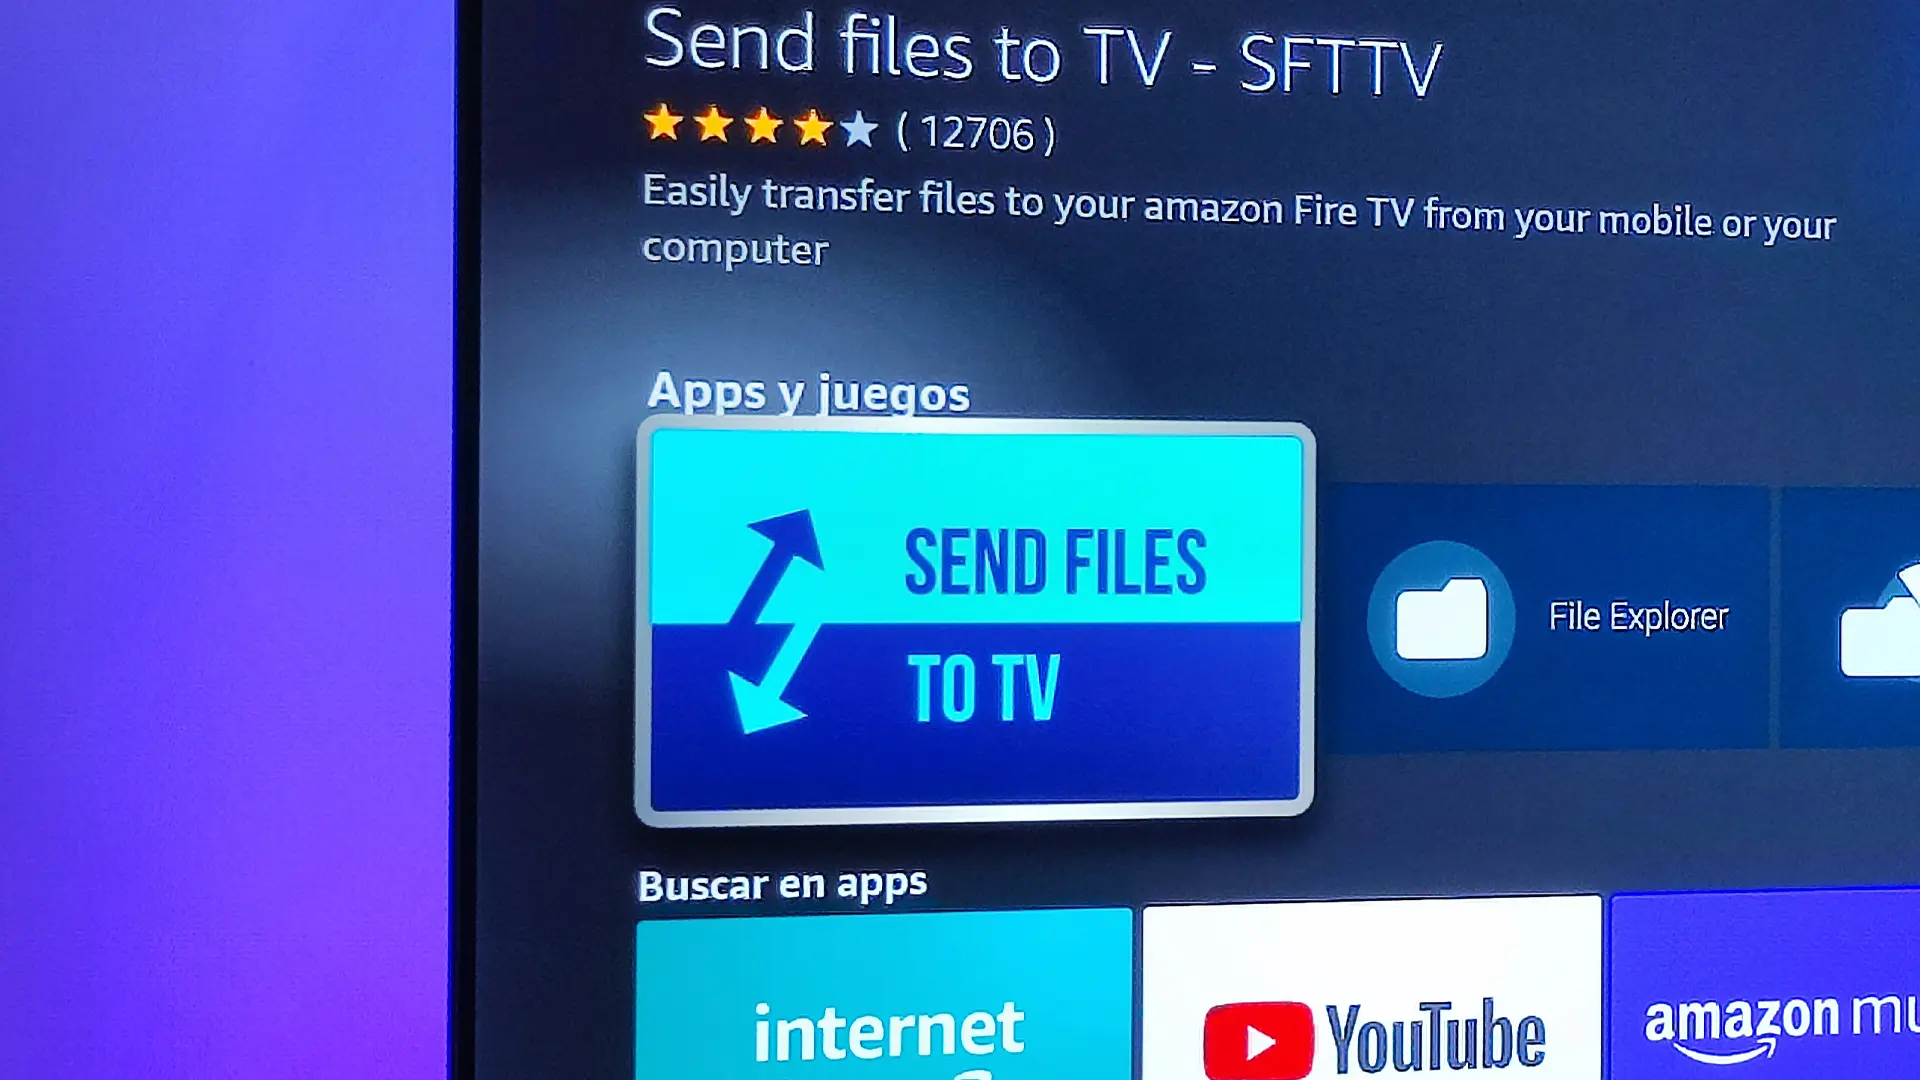 La guía de Send Files to TV SFTTV para enviar archivos a tu Fire TV de forma inalámbrica